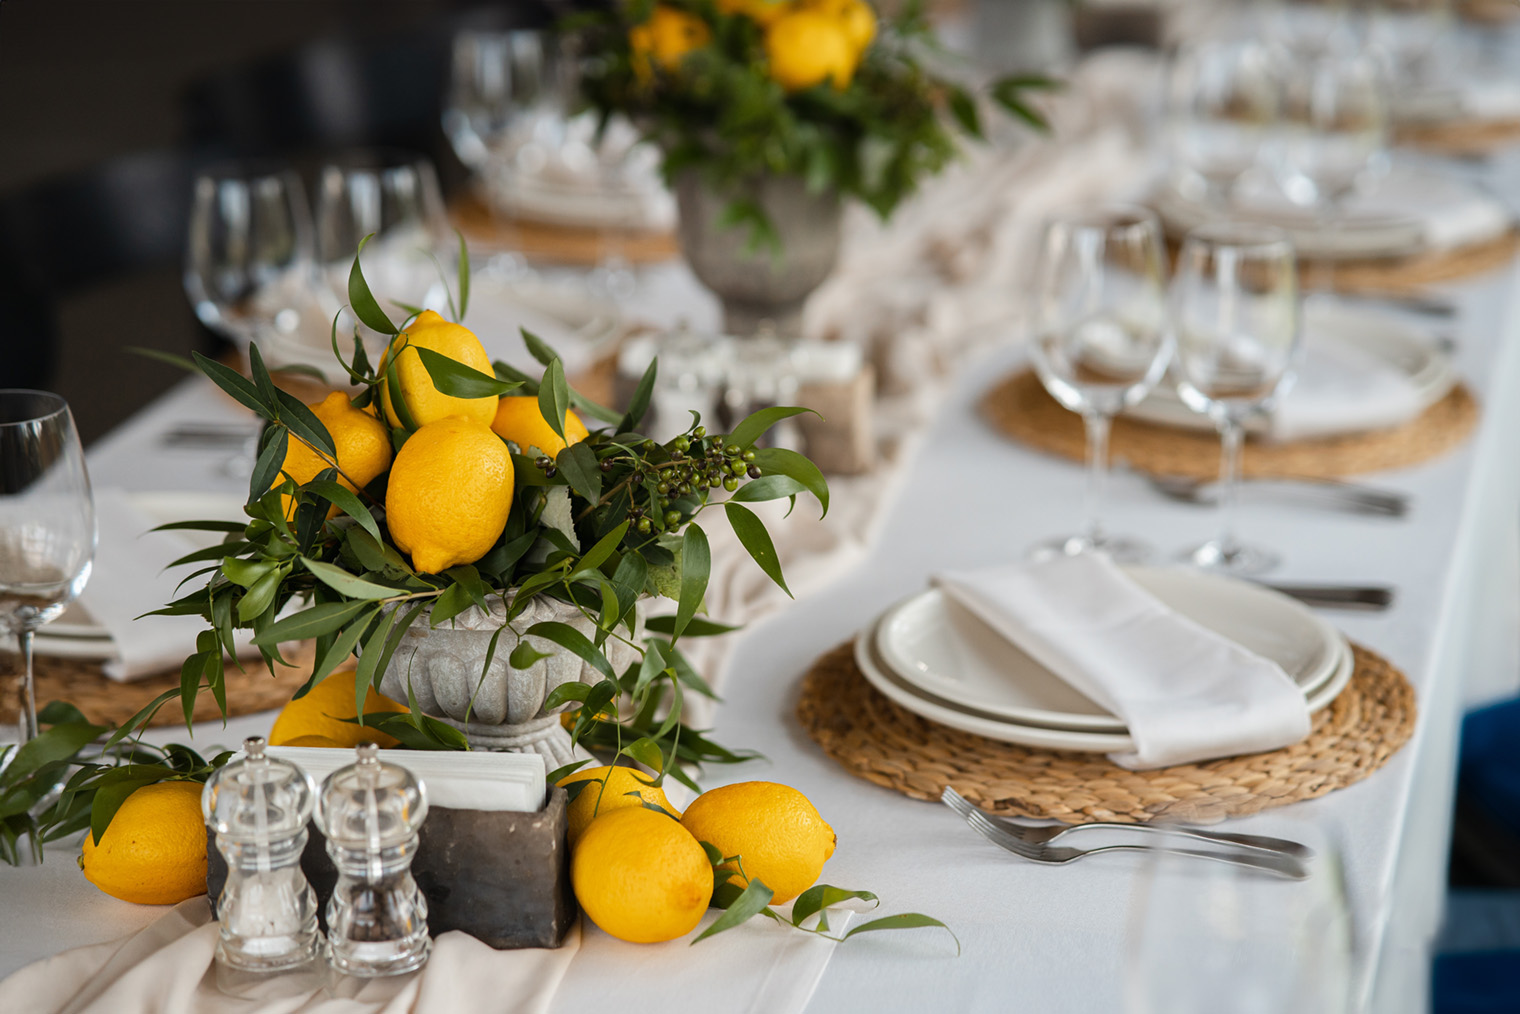 А этот — вазами с лимонами, которые хорошо сочетаются с плетеными плейсматами. Такие нейтральные плейсматы допустимы в классической сервировке. Фотография: Hrecheniuk Oleksii / Shutterstock / FOTODOM